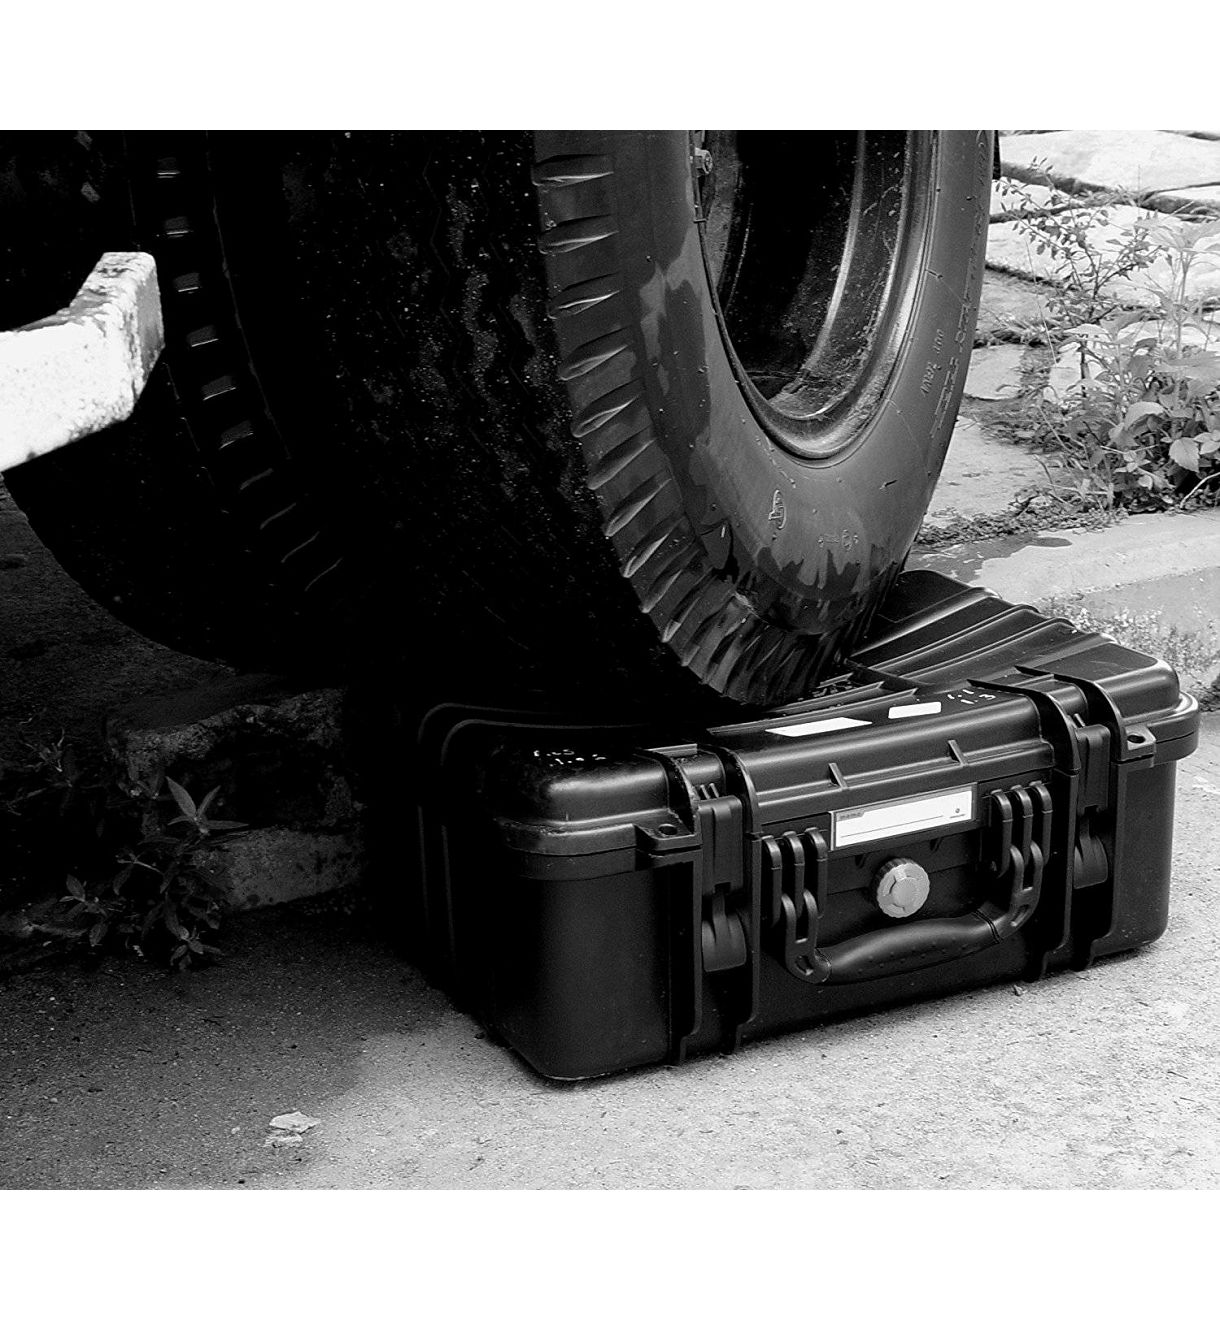 Vanguard Supreme 40D Hard Case kufer kofer za fotoaparat, objektive i foto opremu